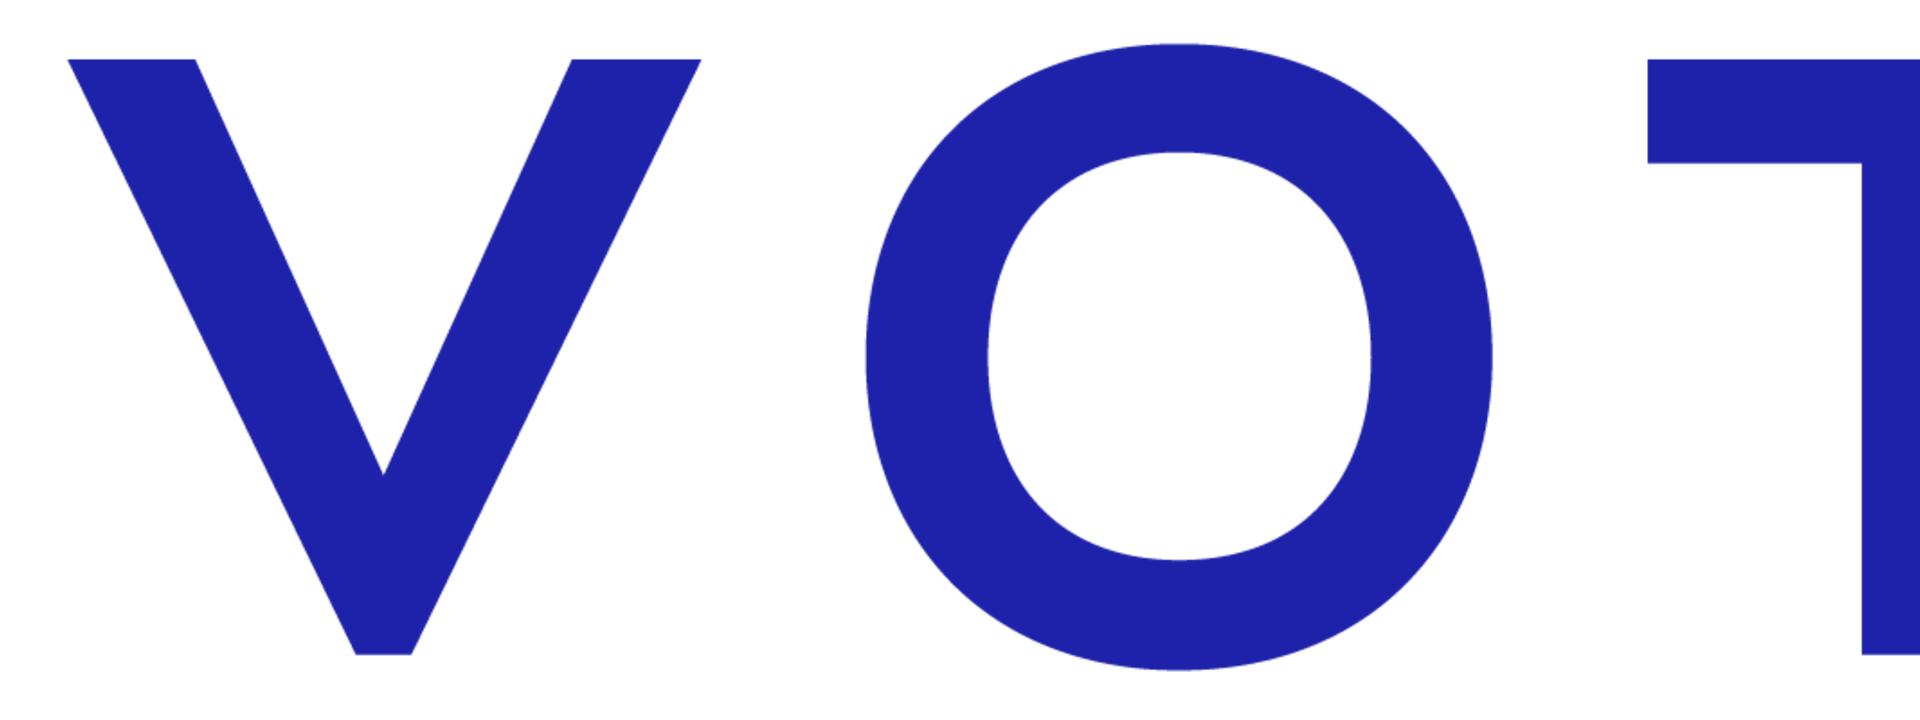 novotel_logo_2019_rvb_1.png